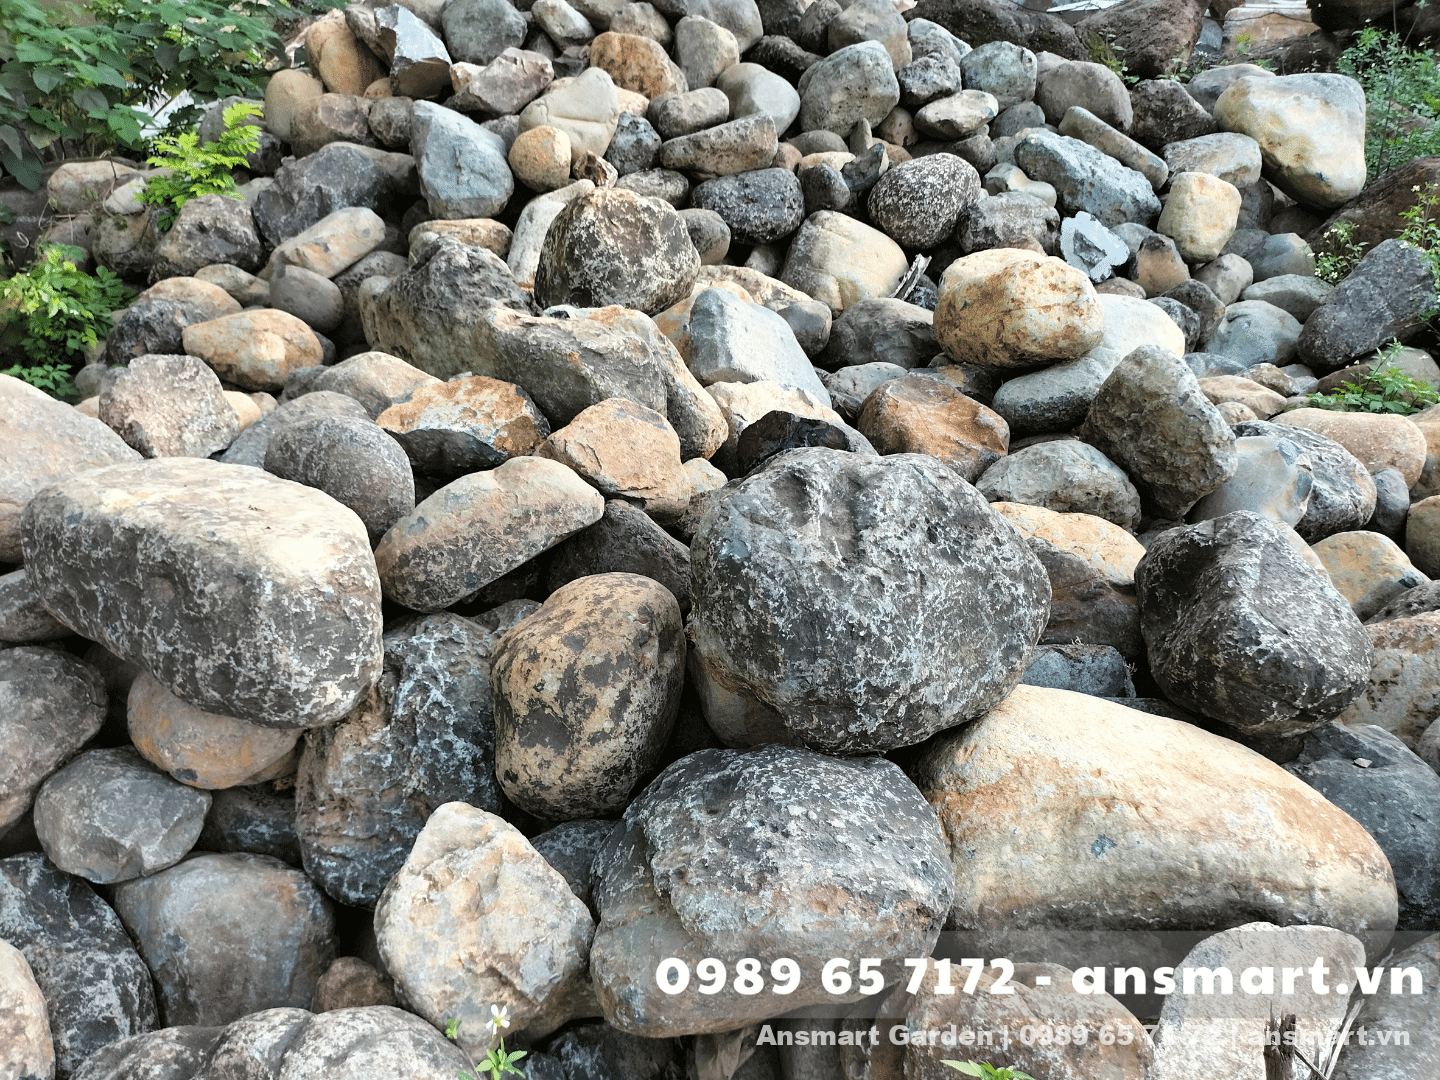 đá cuội lớn làm hồ cá koi, đá cuội trang trí sân vườn, mua đá làm hòn non bộ, Hòn non bộ bằng đá tự nhiên